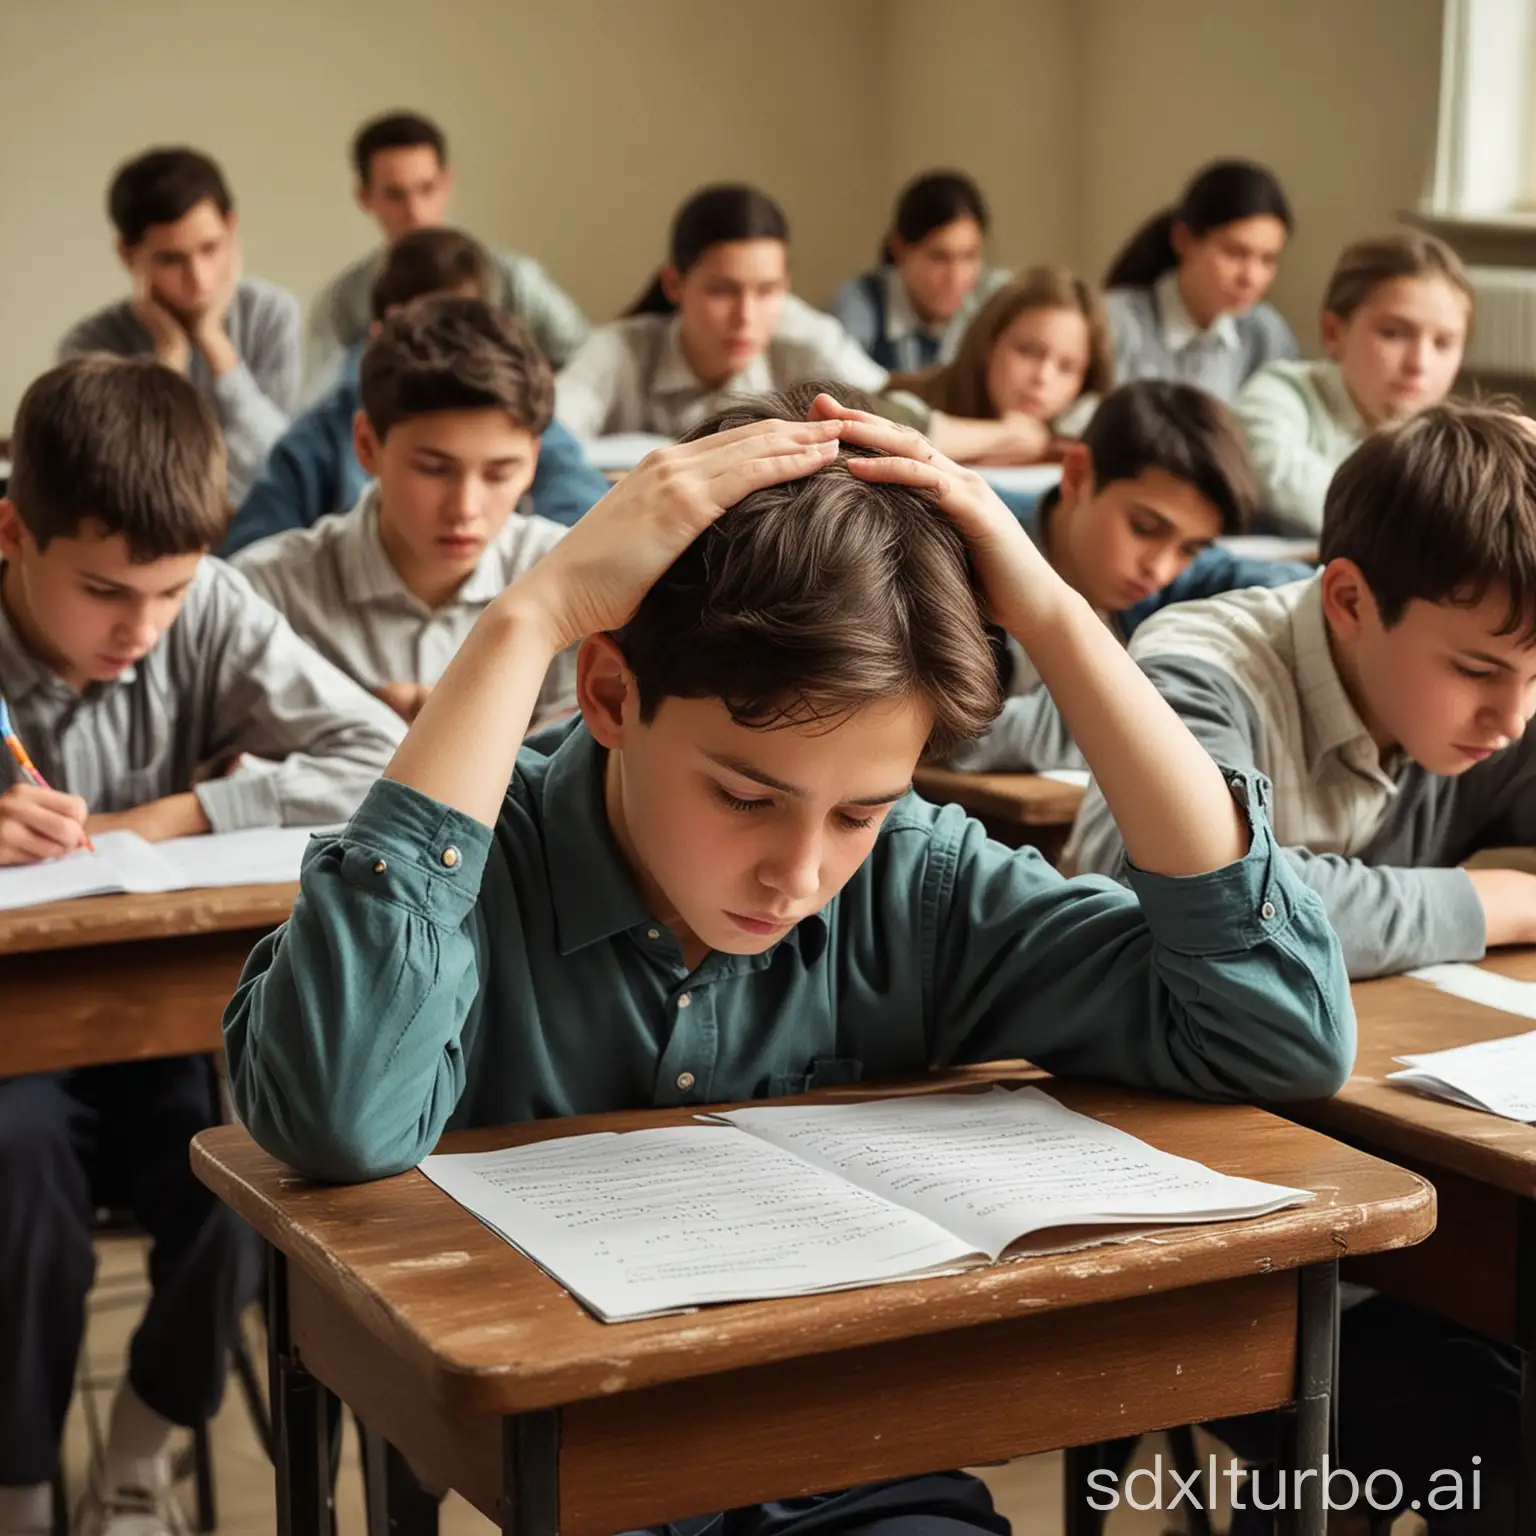 una clase de treinta alumnos de 12 años haciendo un examen de matemáticas muy difícil, centrando la atención en un niño que se lleva las manos a la cabeza lleno de desesperación